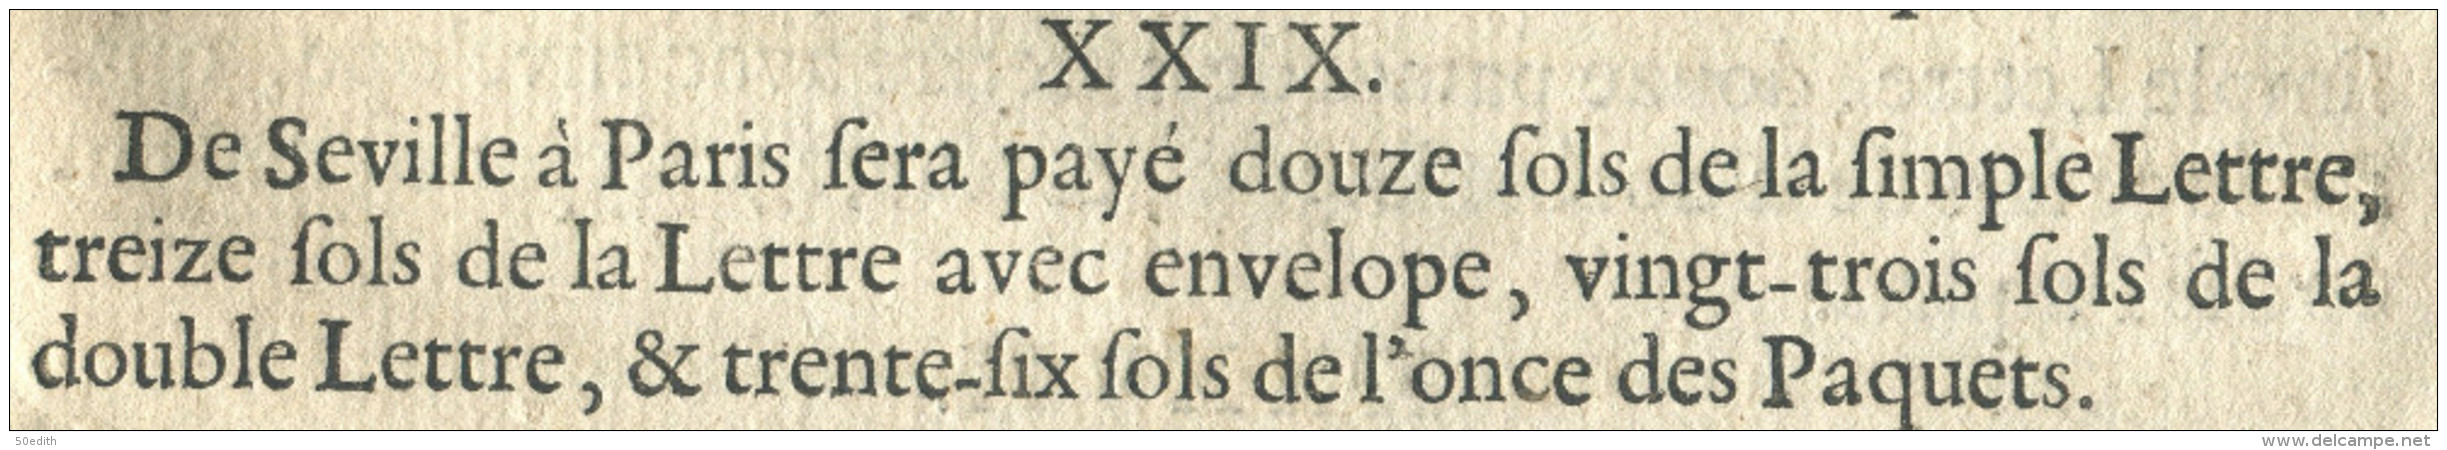 Tarif Général des Droits (pour les ports et lettres), arrêté au Conseil Royal tenu à St Germain en Laye le 11 avril 1676